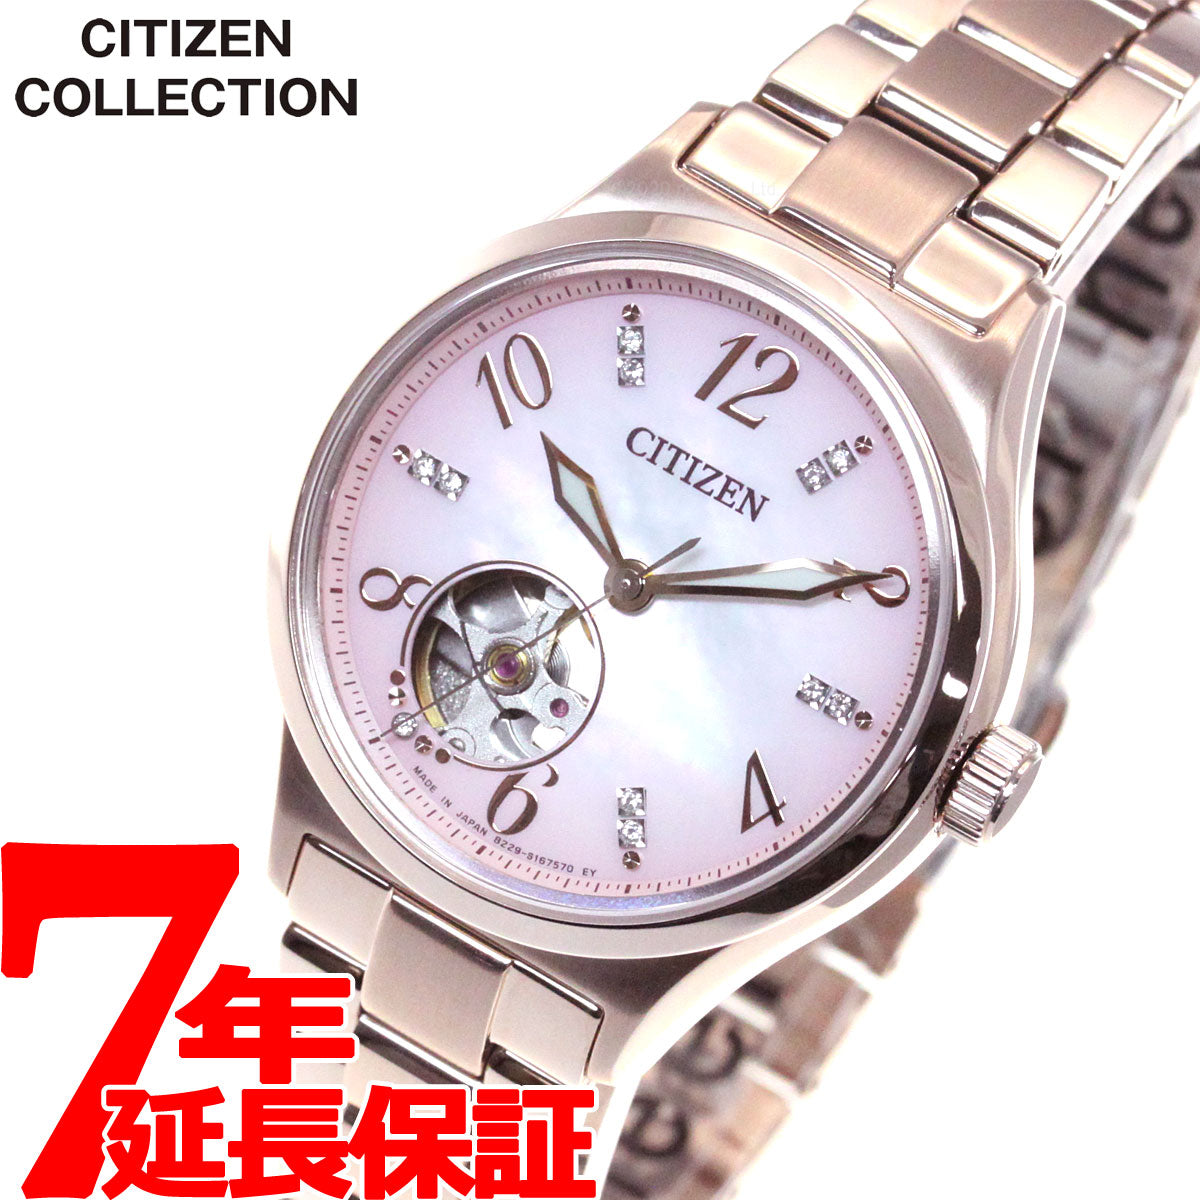 シチズンコレクション CITIZEN COLLECTION メカニカル 自動巻き 機械式 腕時計 レディース PC1005-87X